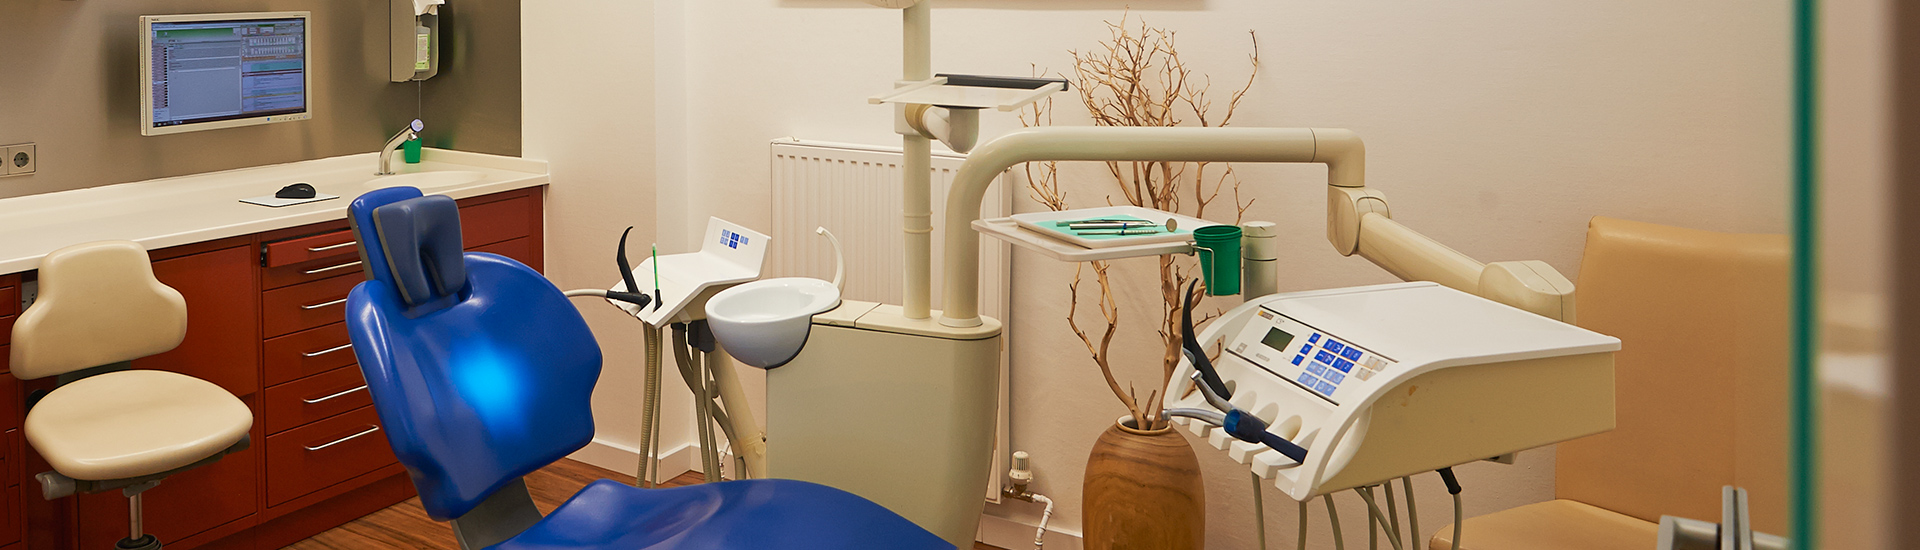 Zahnzentrum-Neukoelln-Berlin-Behandlungsraum-Zahnarzt